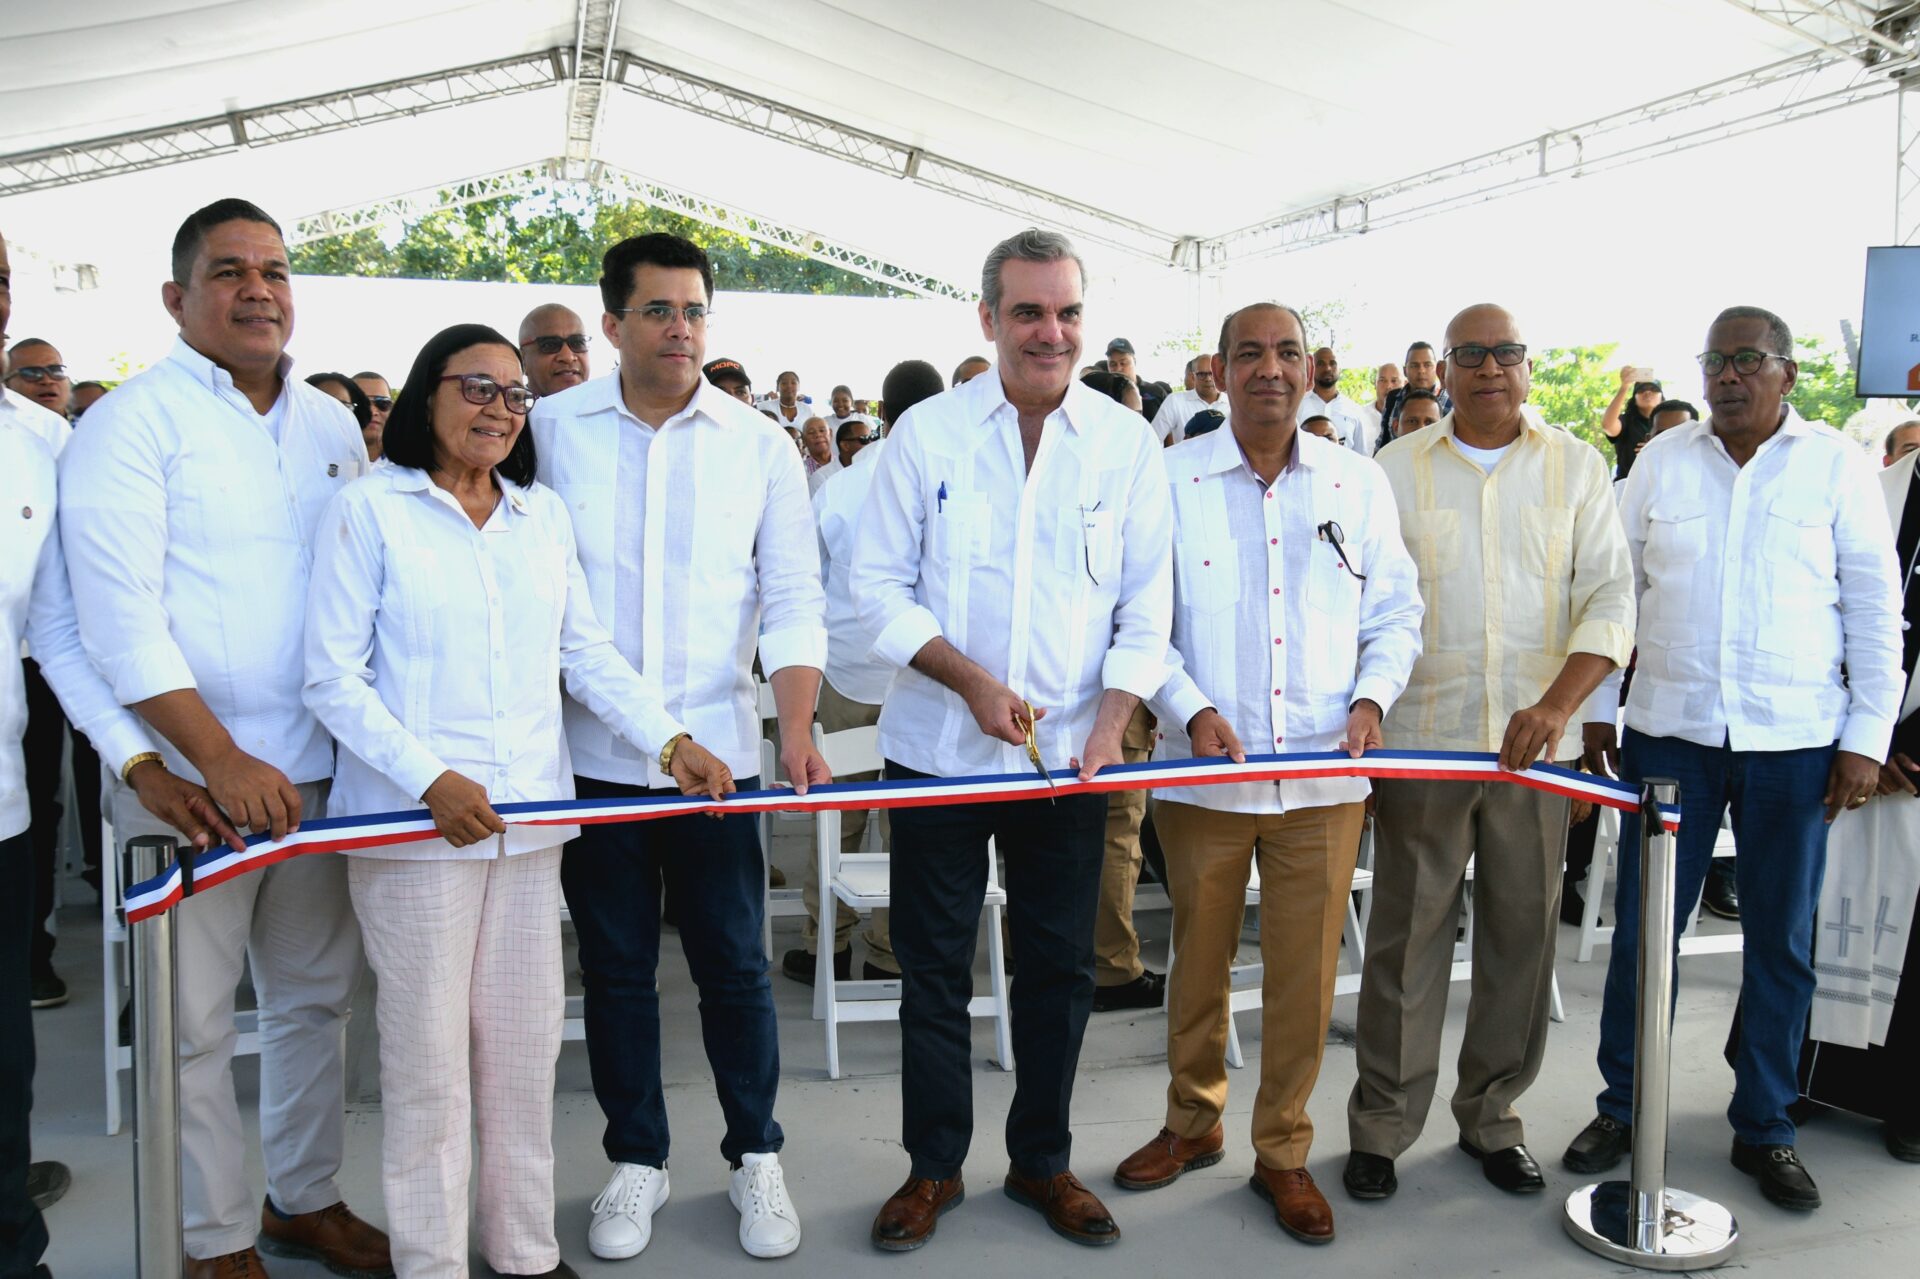 Presidente Abinader inaugura carretera Cabral-El Peñón en Barahona